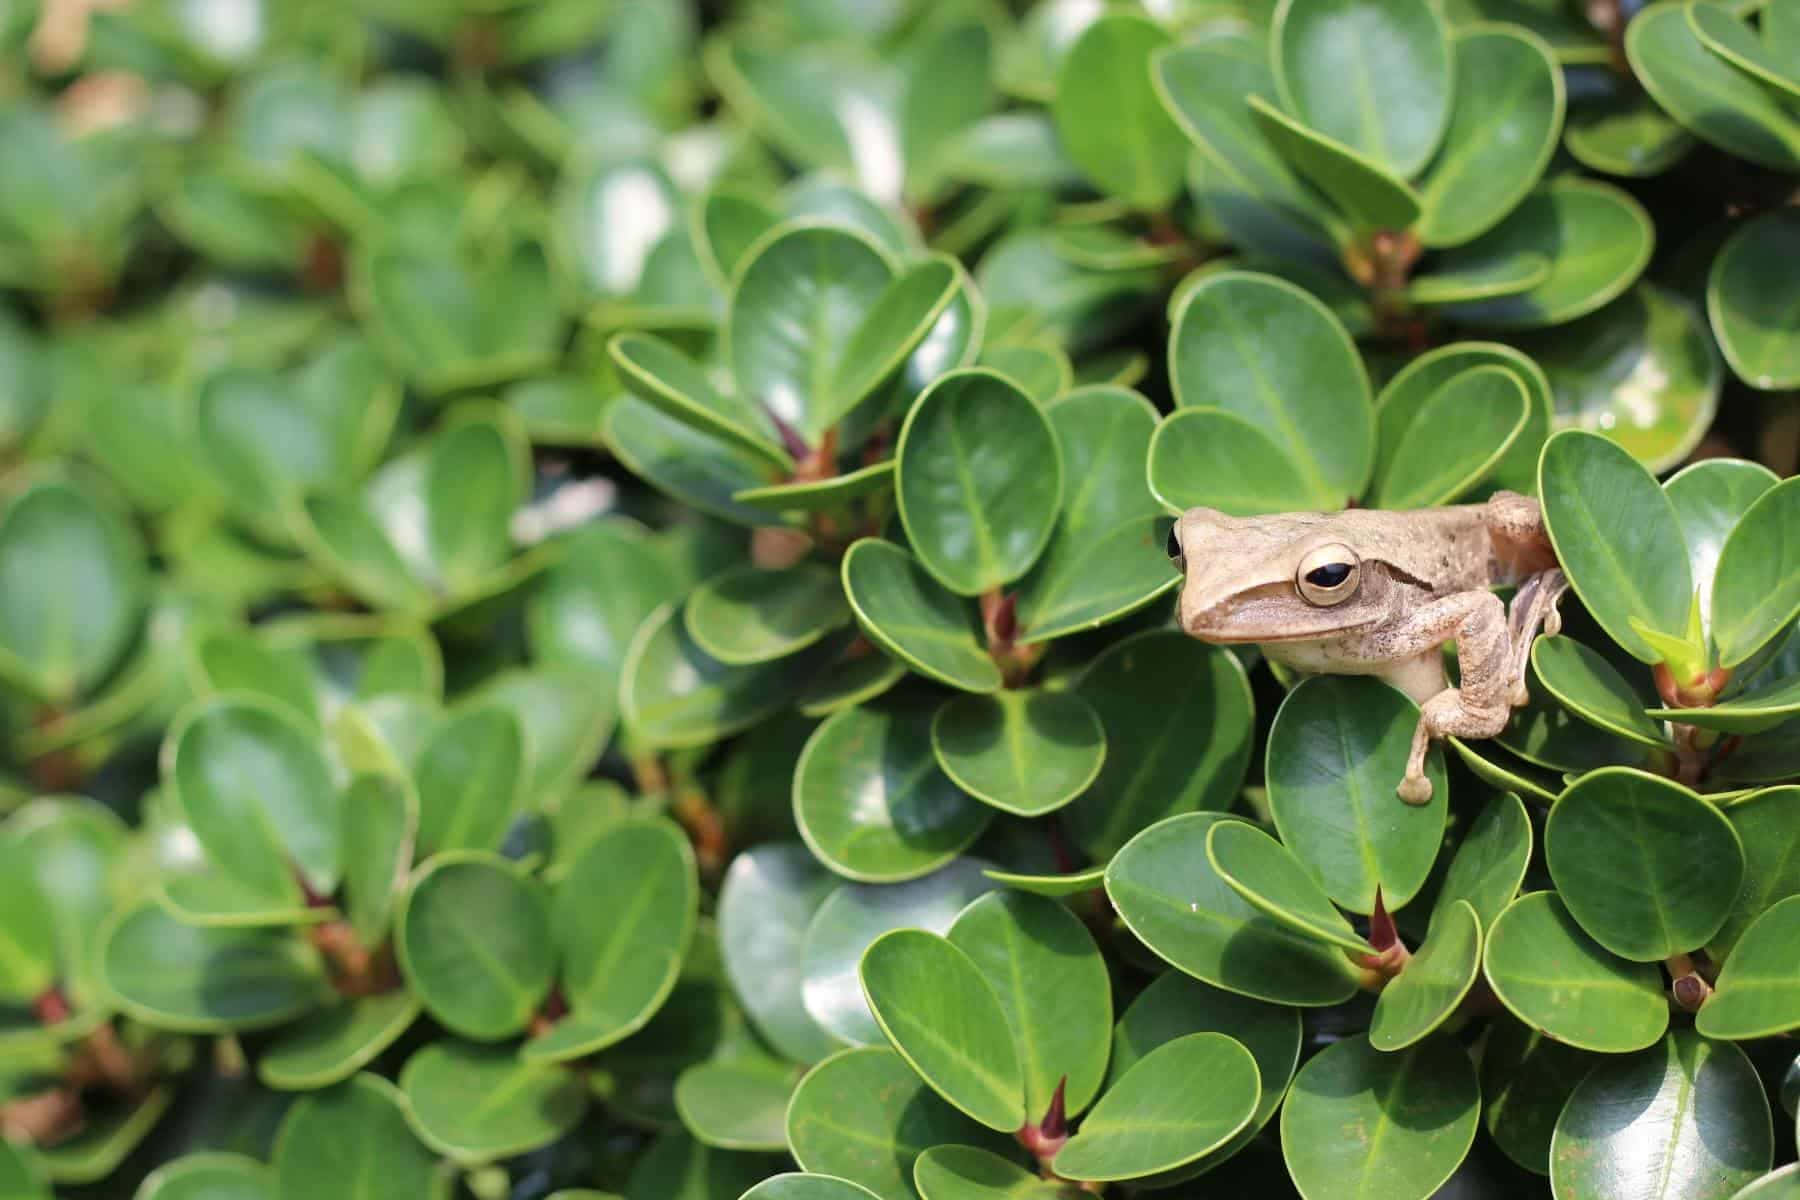 Frog Hiding Among Green Leaves.jpg Wallpaper